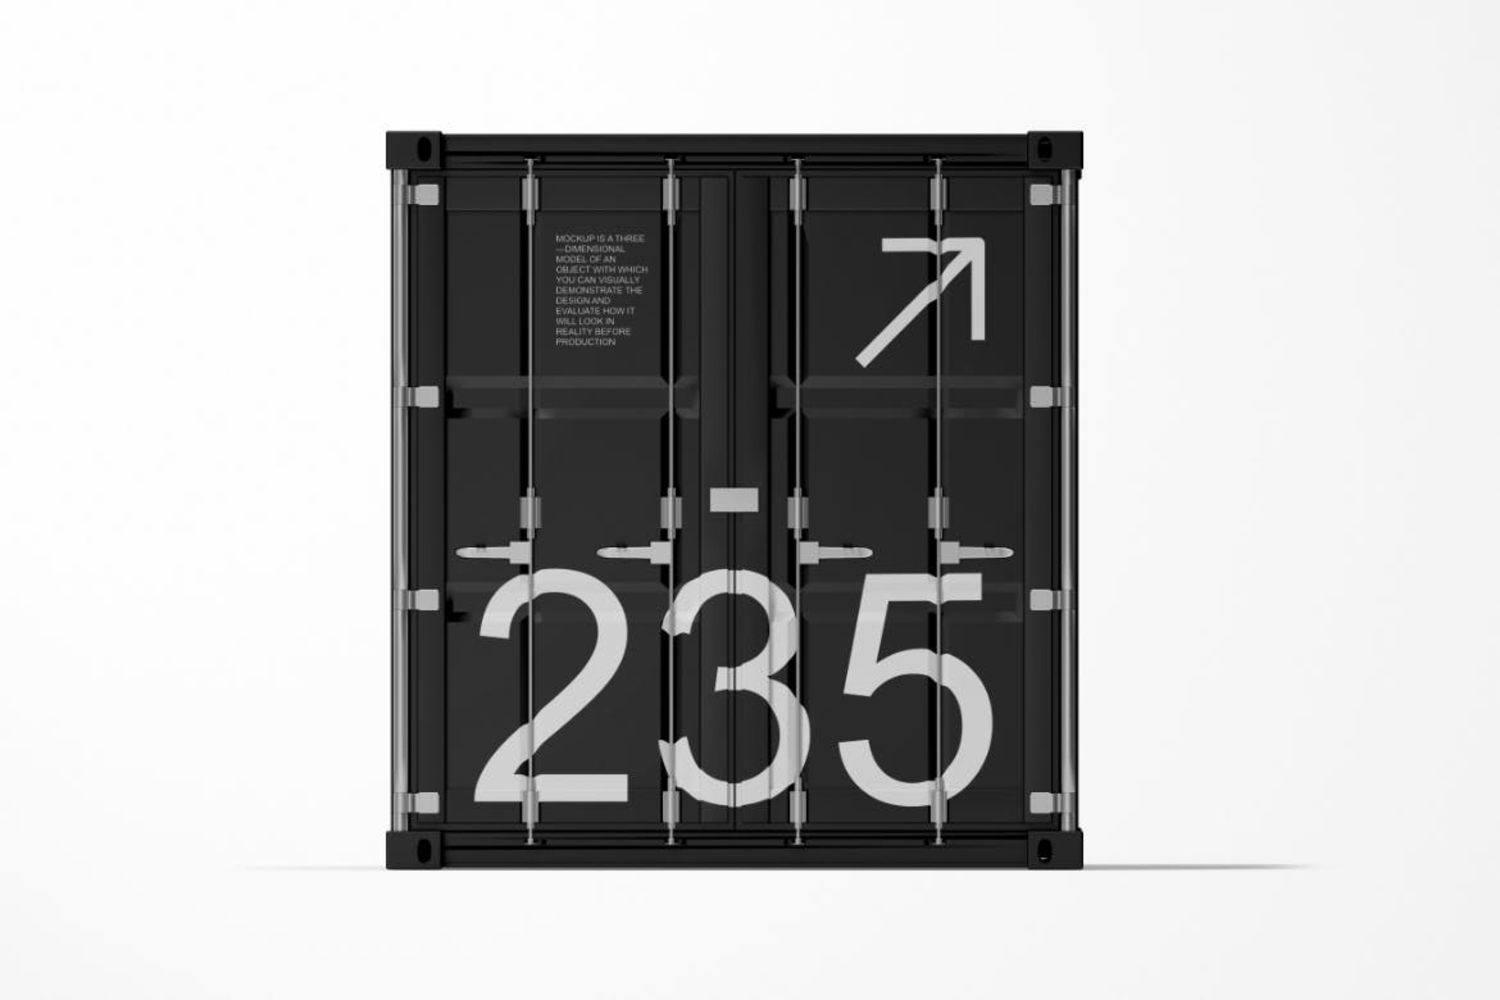 4622 3款创意集装箱移动房线下路演品牌广告设计ps样机素材展示效果图 Cargo Container Mockup Set@GOOODME.COM